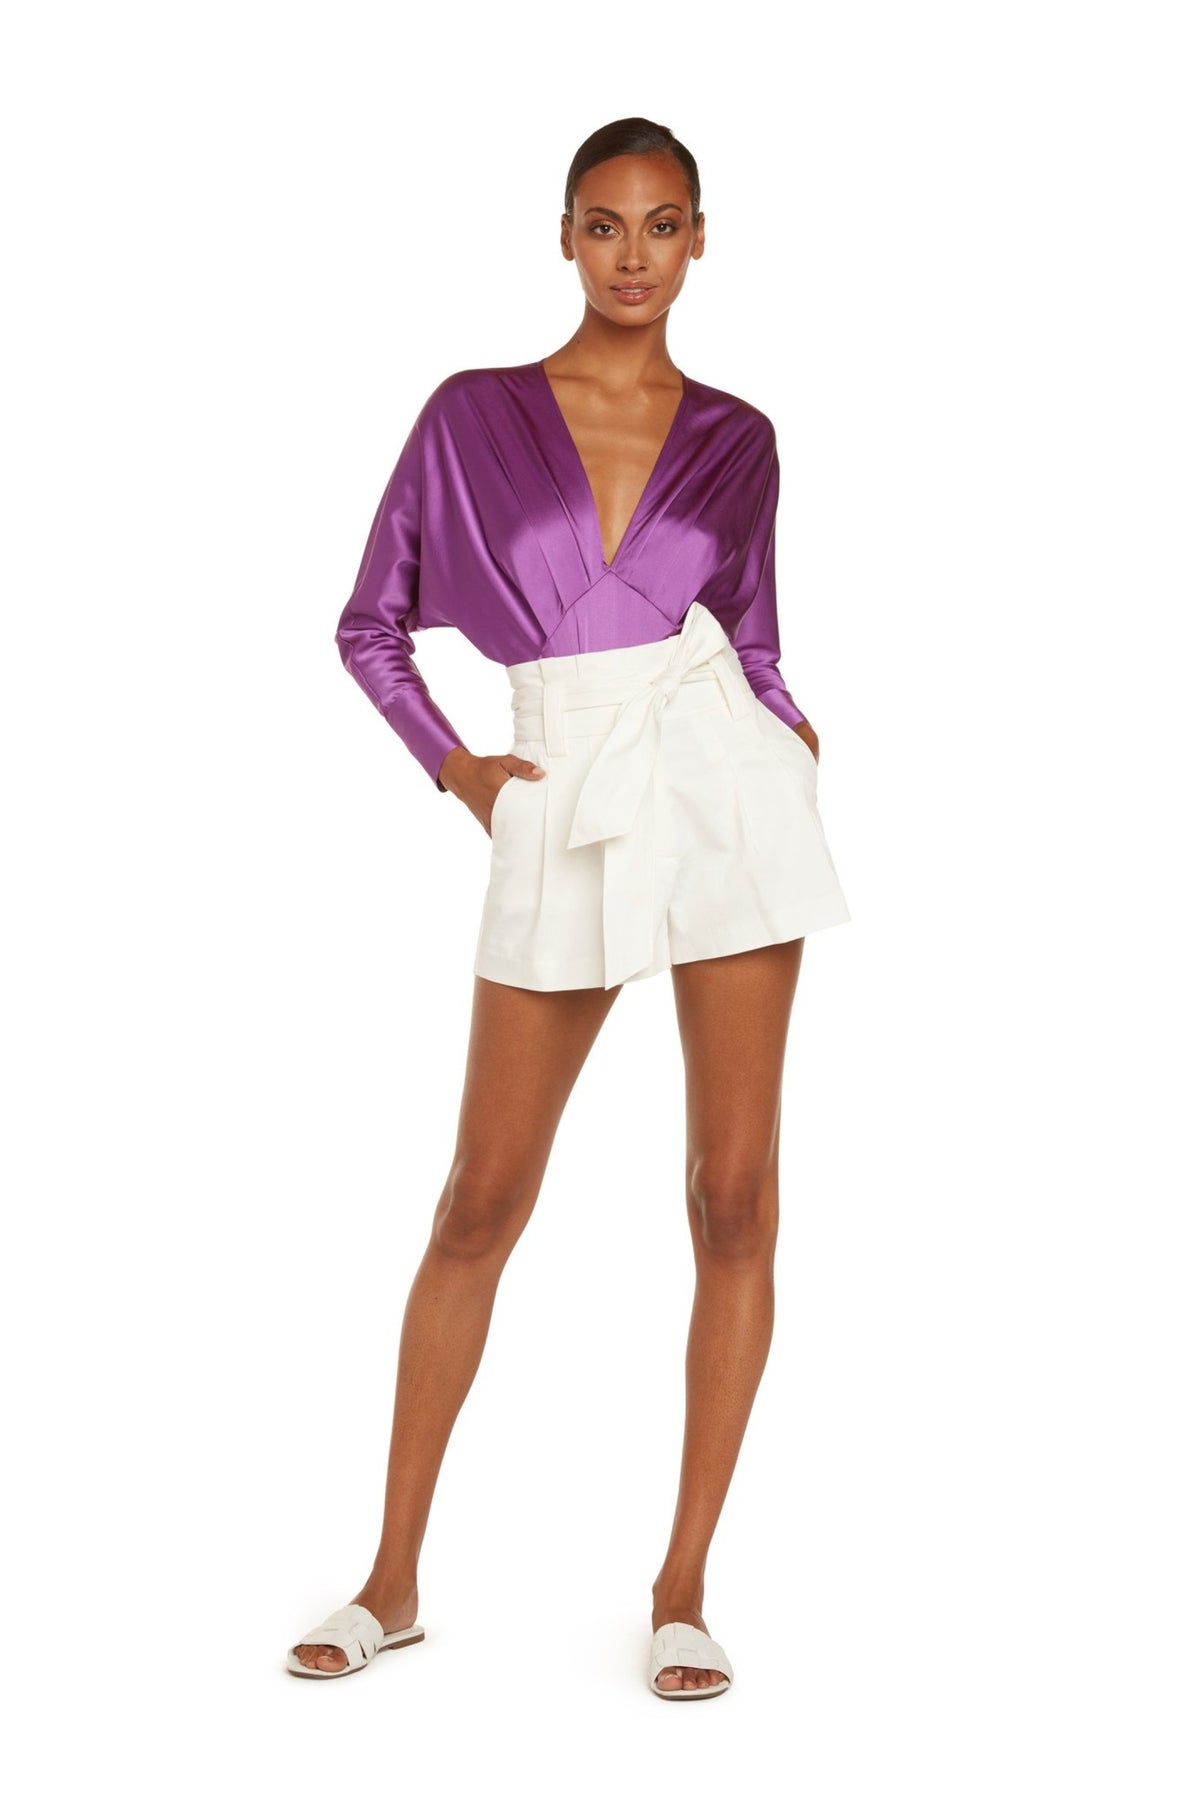 Colette Long Sleeve Bodysuit in Violet